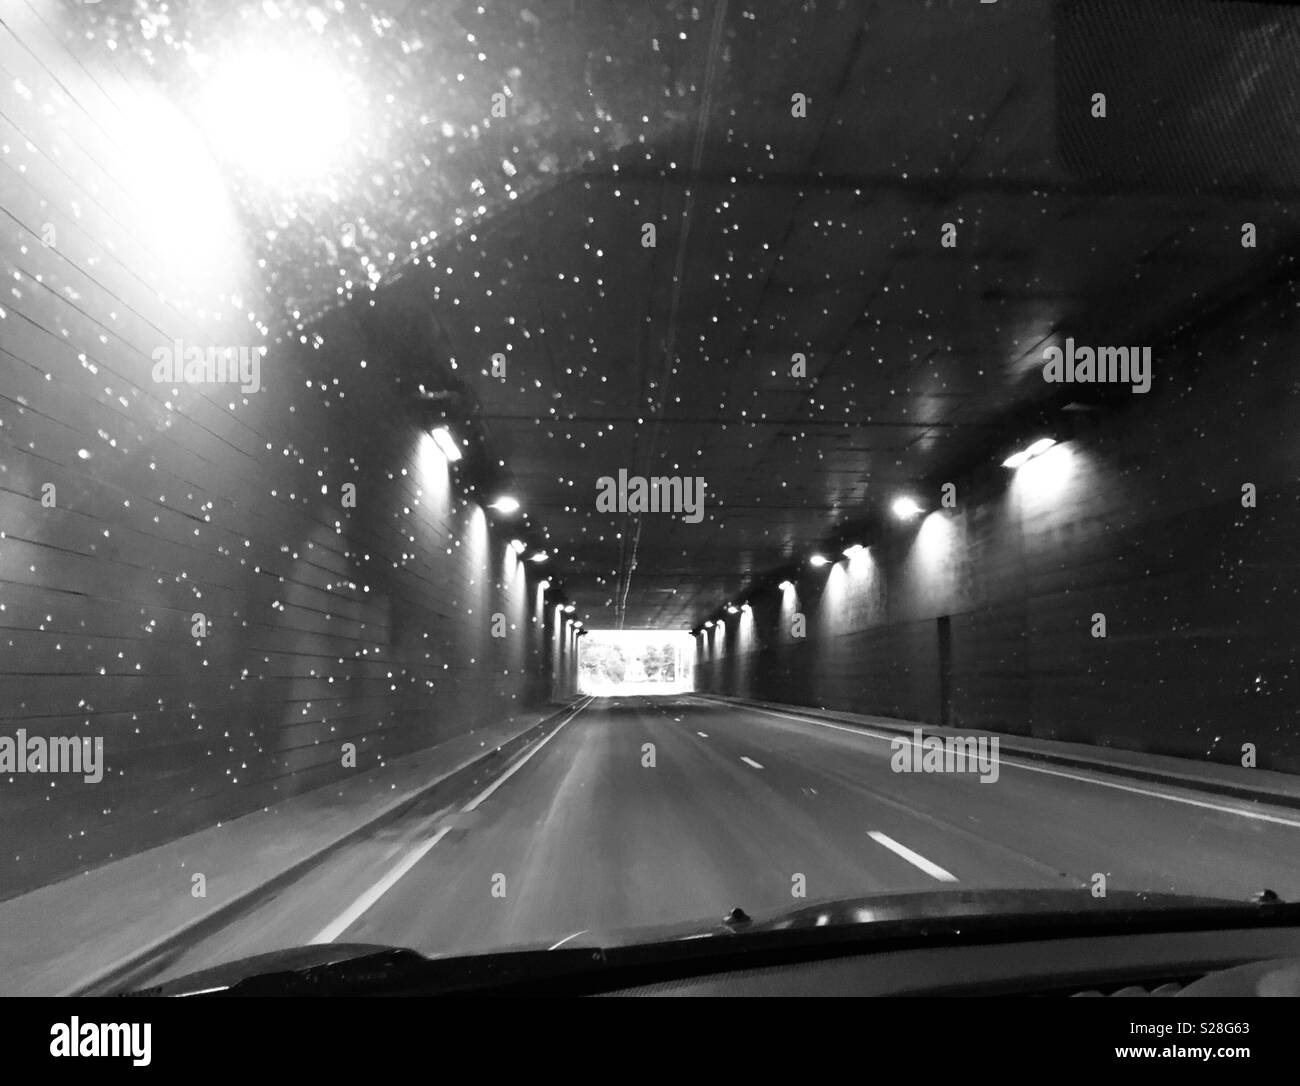 La conduite dans un tunnel avec gouttes de pluie sur le pare-brise Banque D'Images